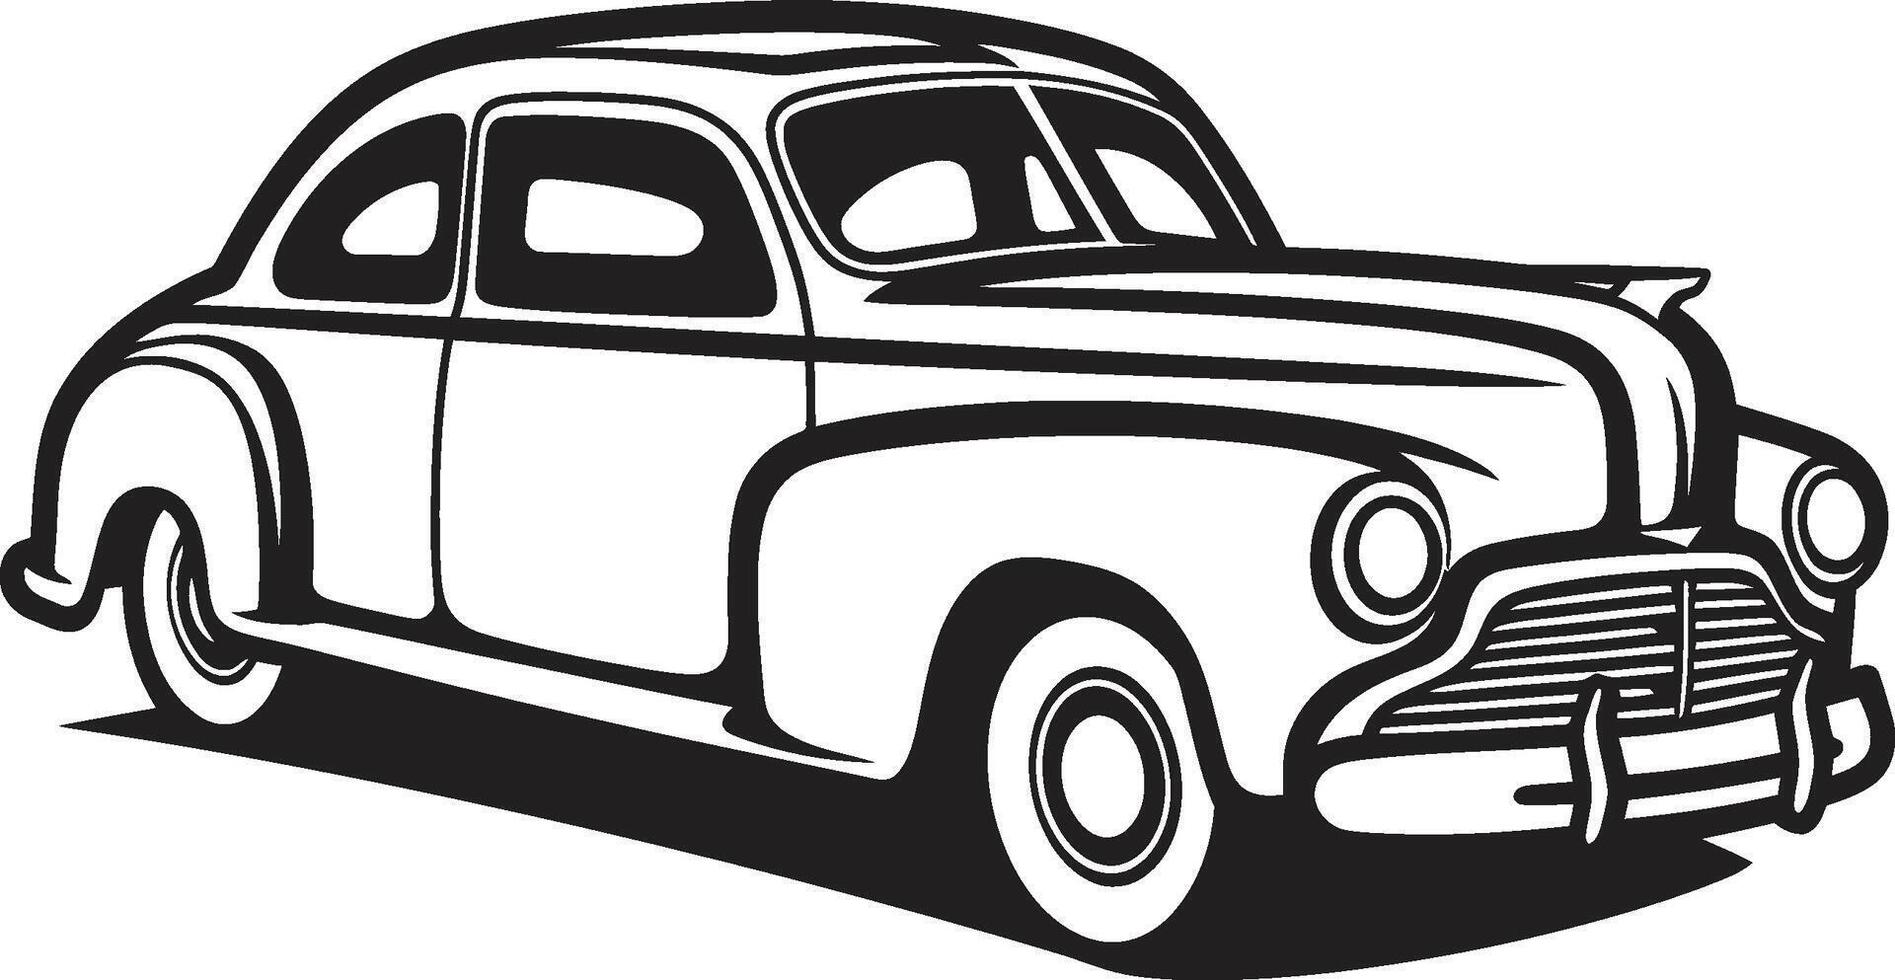 antigamente charme do vintage carro rabisco retro viagem emblemático elemento para rabisco linha arte vetor